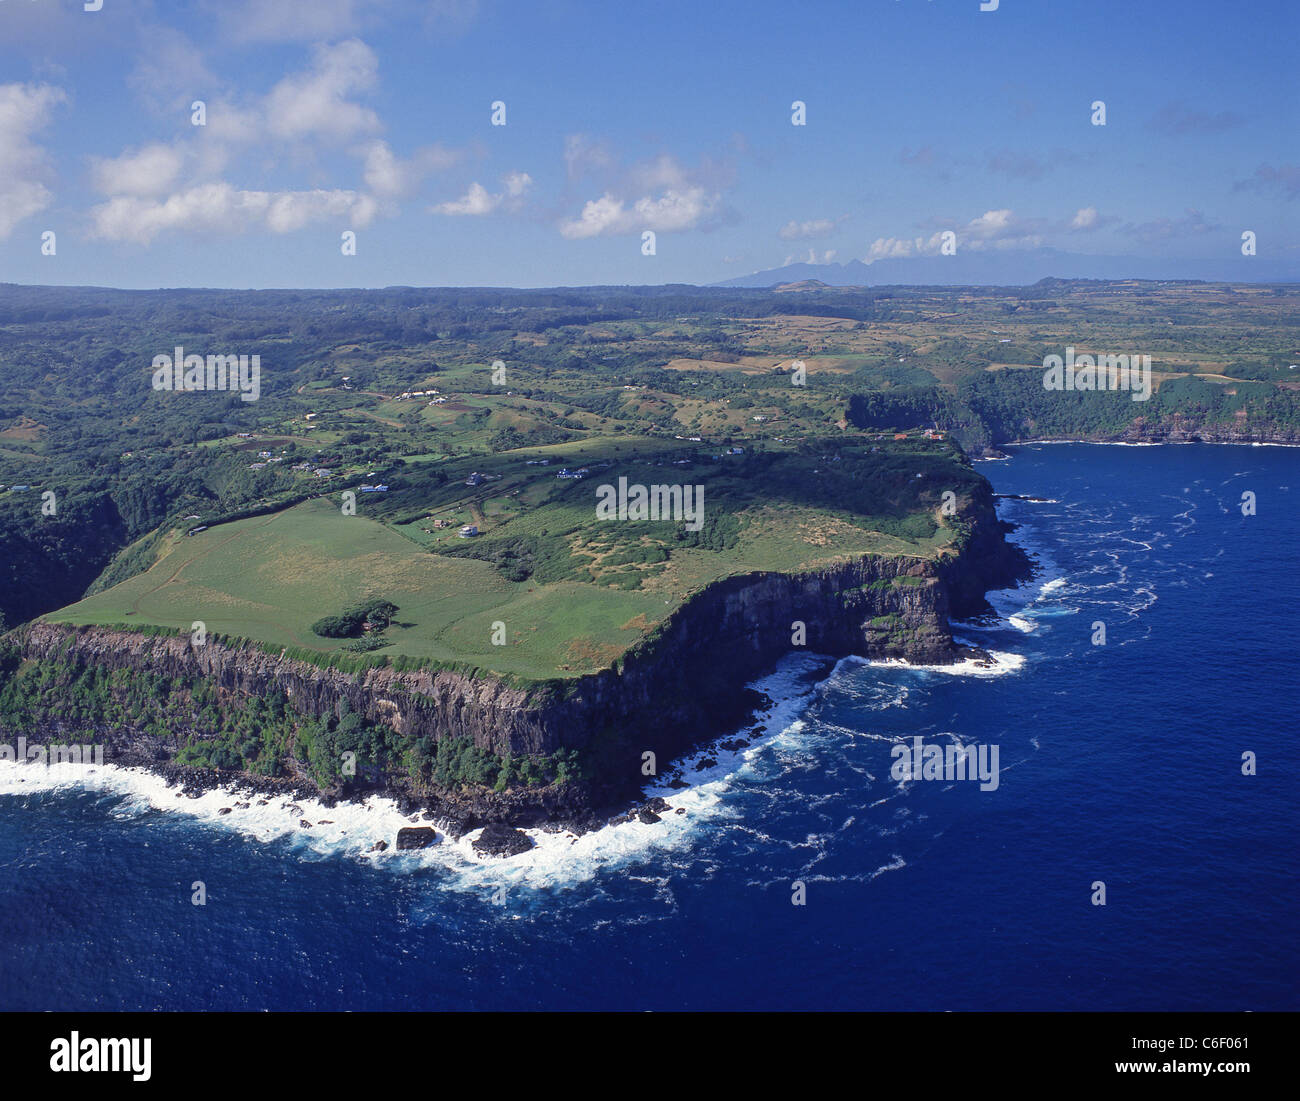 Vista aerea della costa orientale, Maui, Hawaii, Stati Uniti d'America Foto Stock